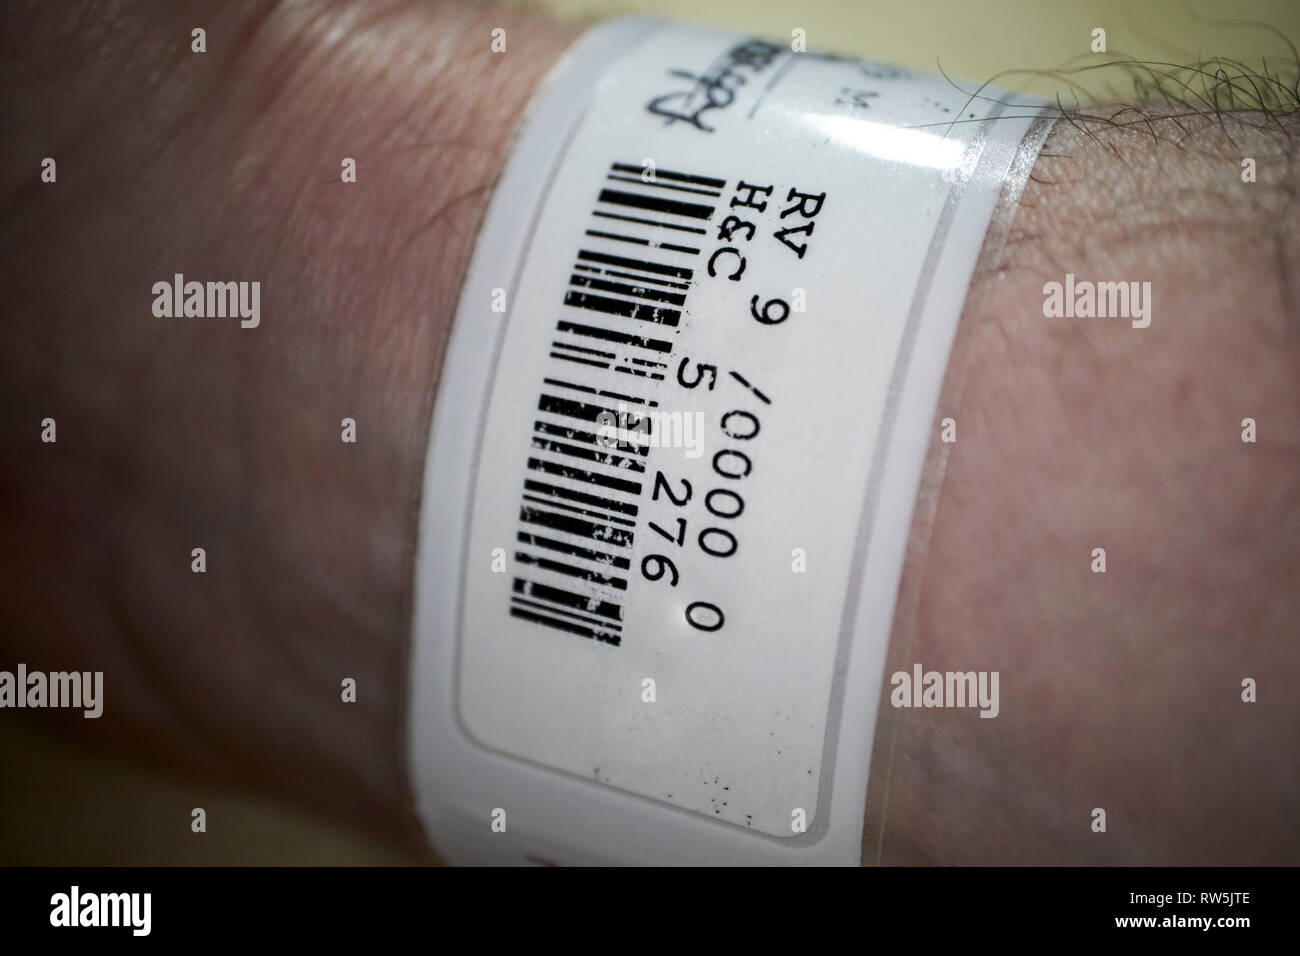 Patienten Handgelenk label Armband Aufnahme-, Etiketten- und Barcodedruckern im Krankenhaus Stockfoto